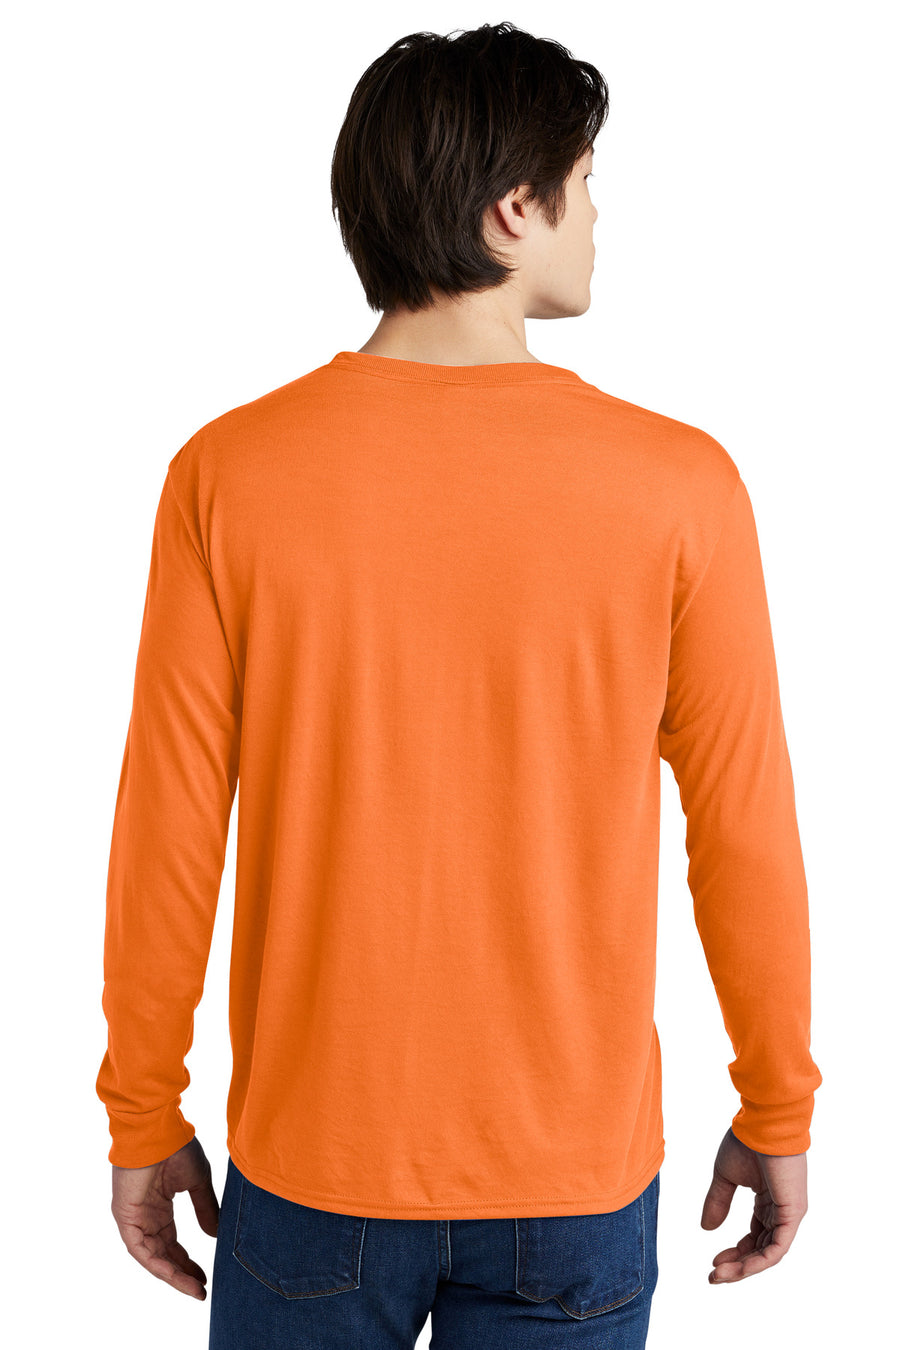 21LS-Safety Orange-back_model